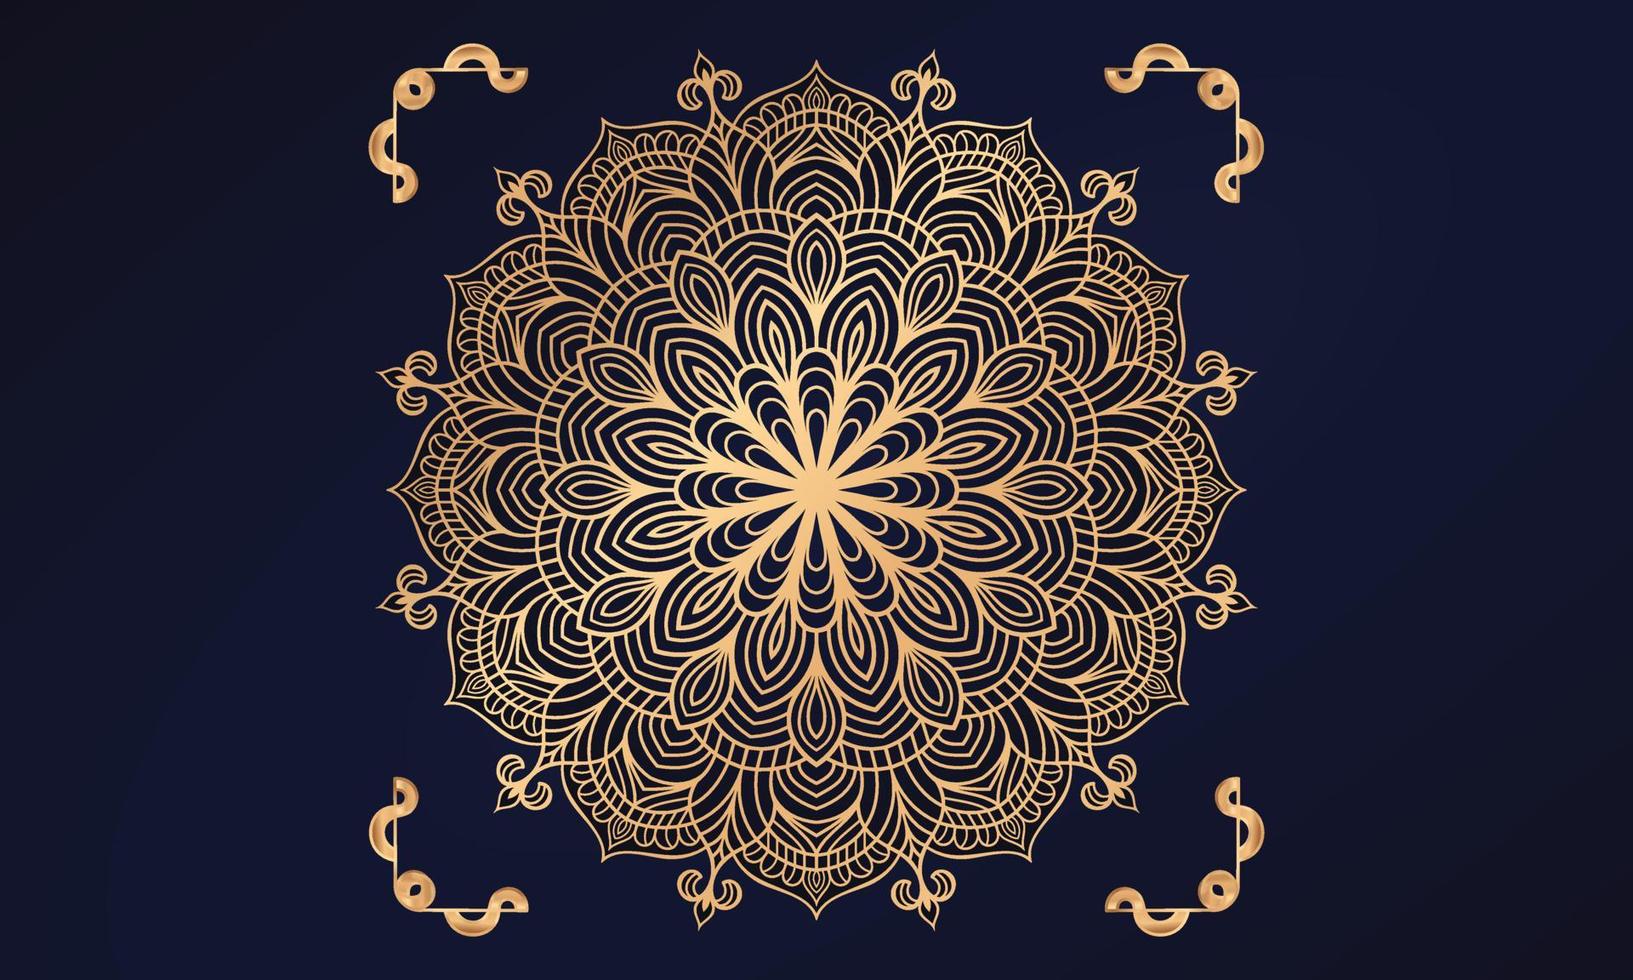 conception de fond de mandala de luxe avec motif arabesque doré style islamique oriental oriental. conception de mandala décoratif pour impression, affiche, couverture, brochure, dépliant, bannière. vecteur